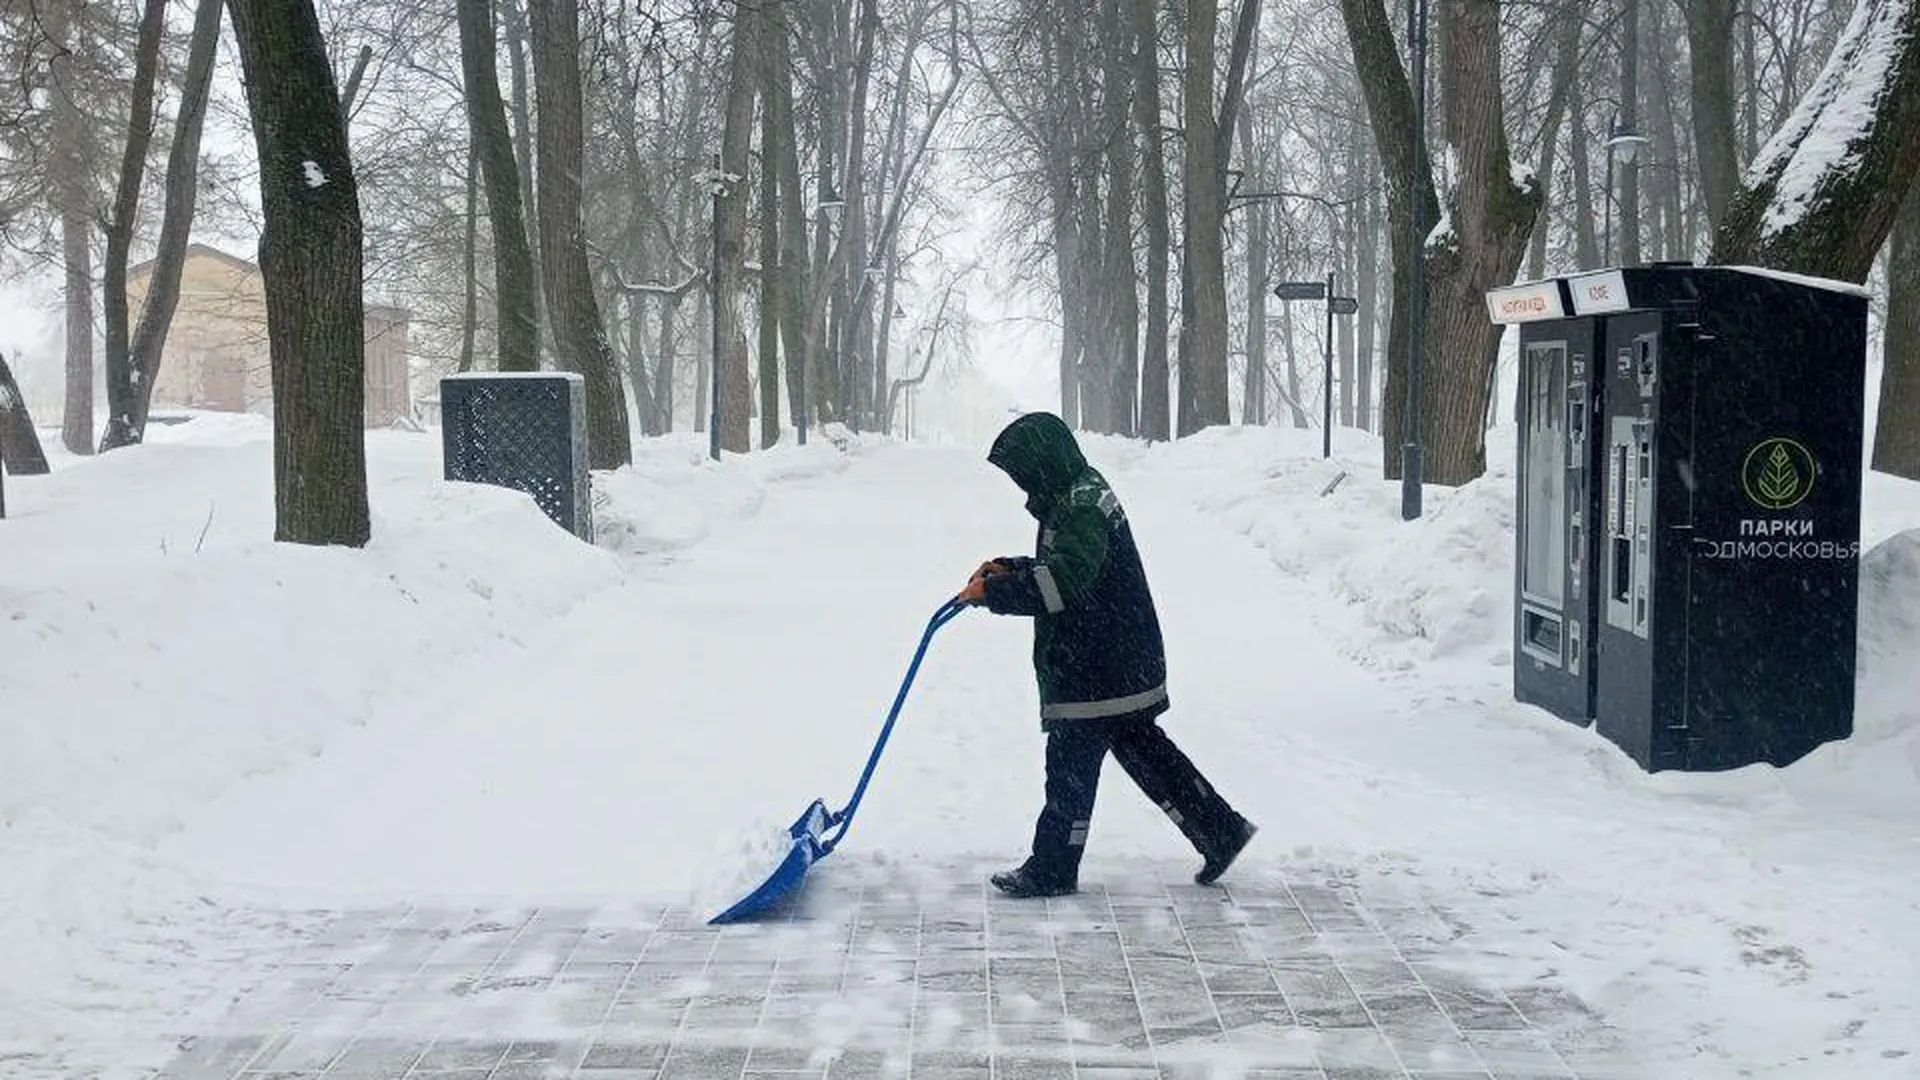 Более 54 тысяч кубометров снега вывезли из парков Подмосковья за неделю